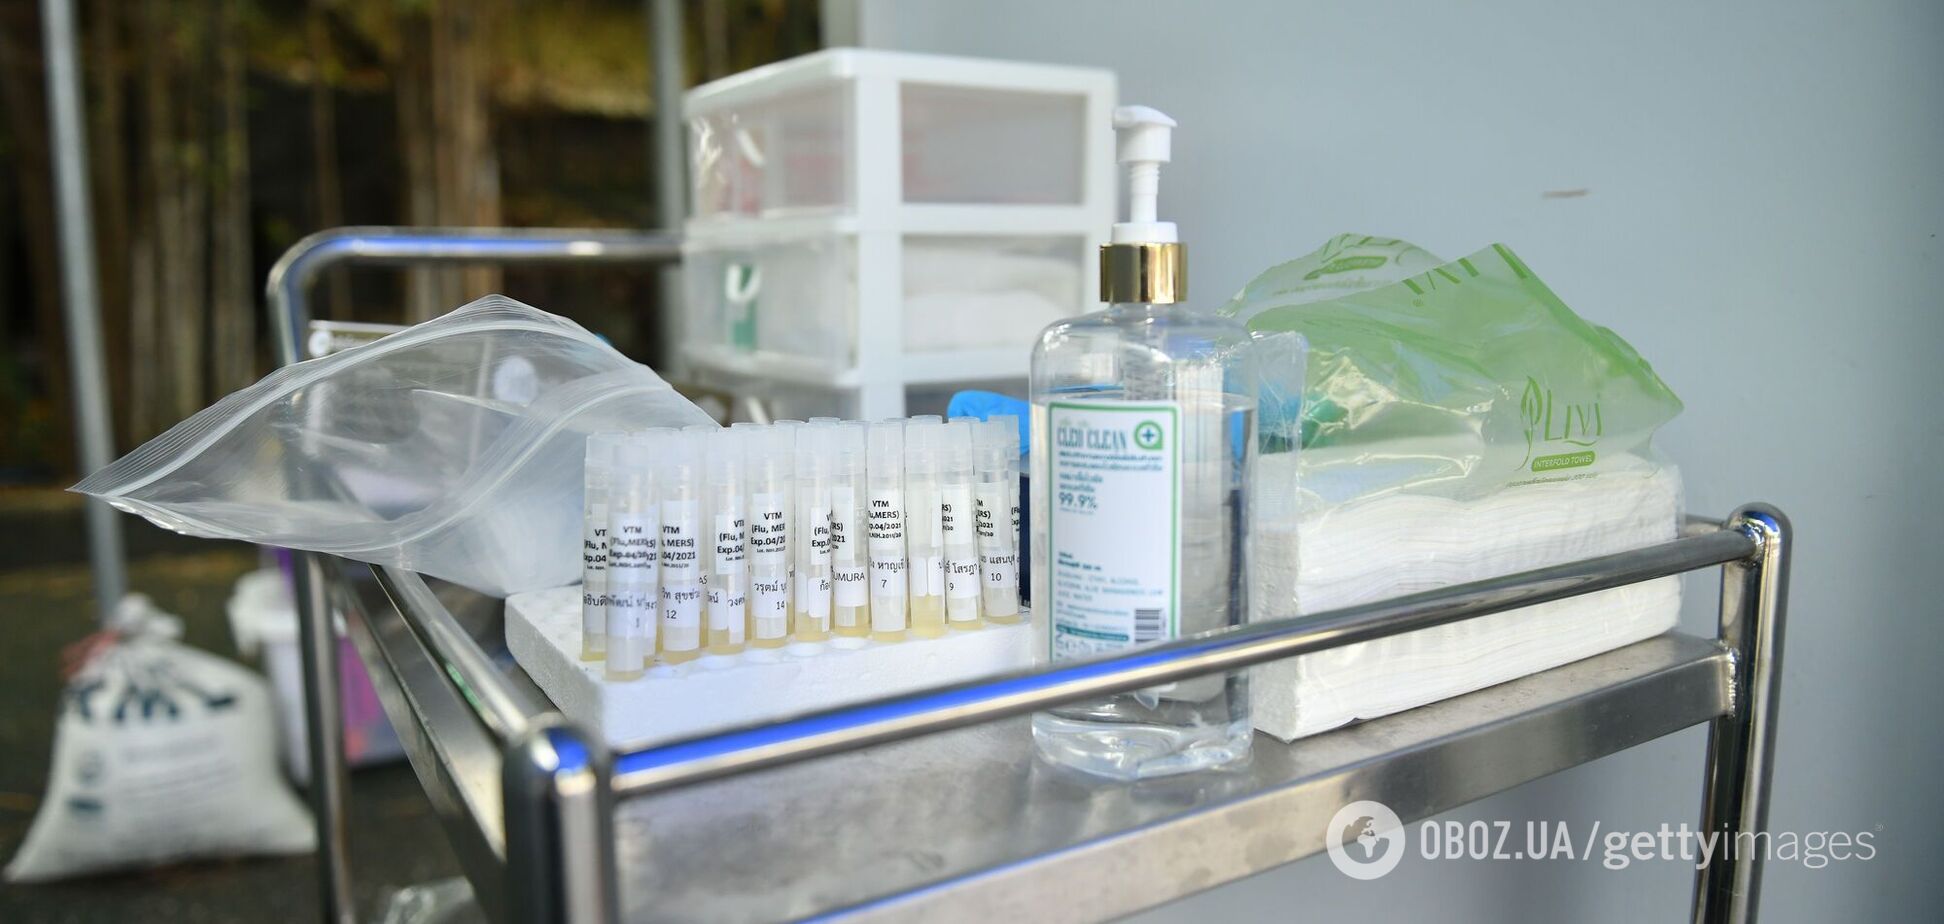 Тест на коронавирус в Украине: сколько стоит, где сдать и при каких симптомах